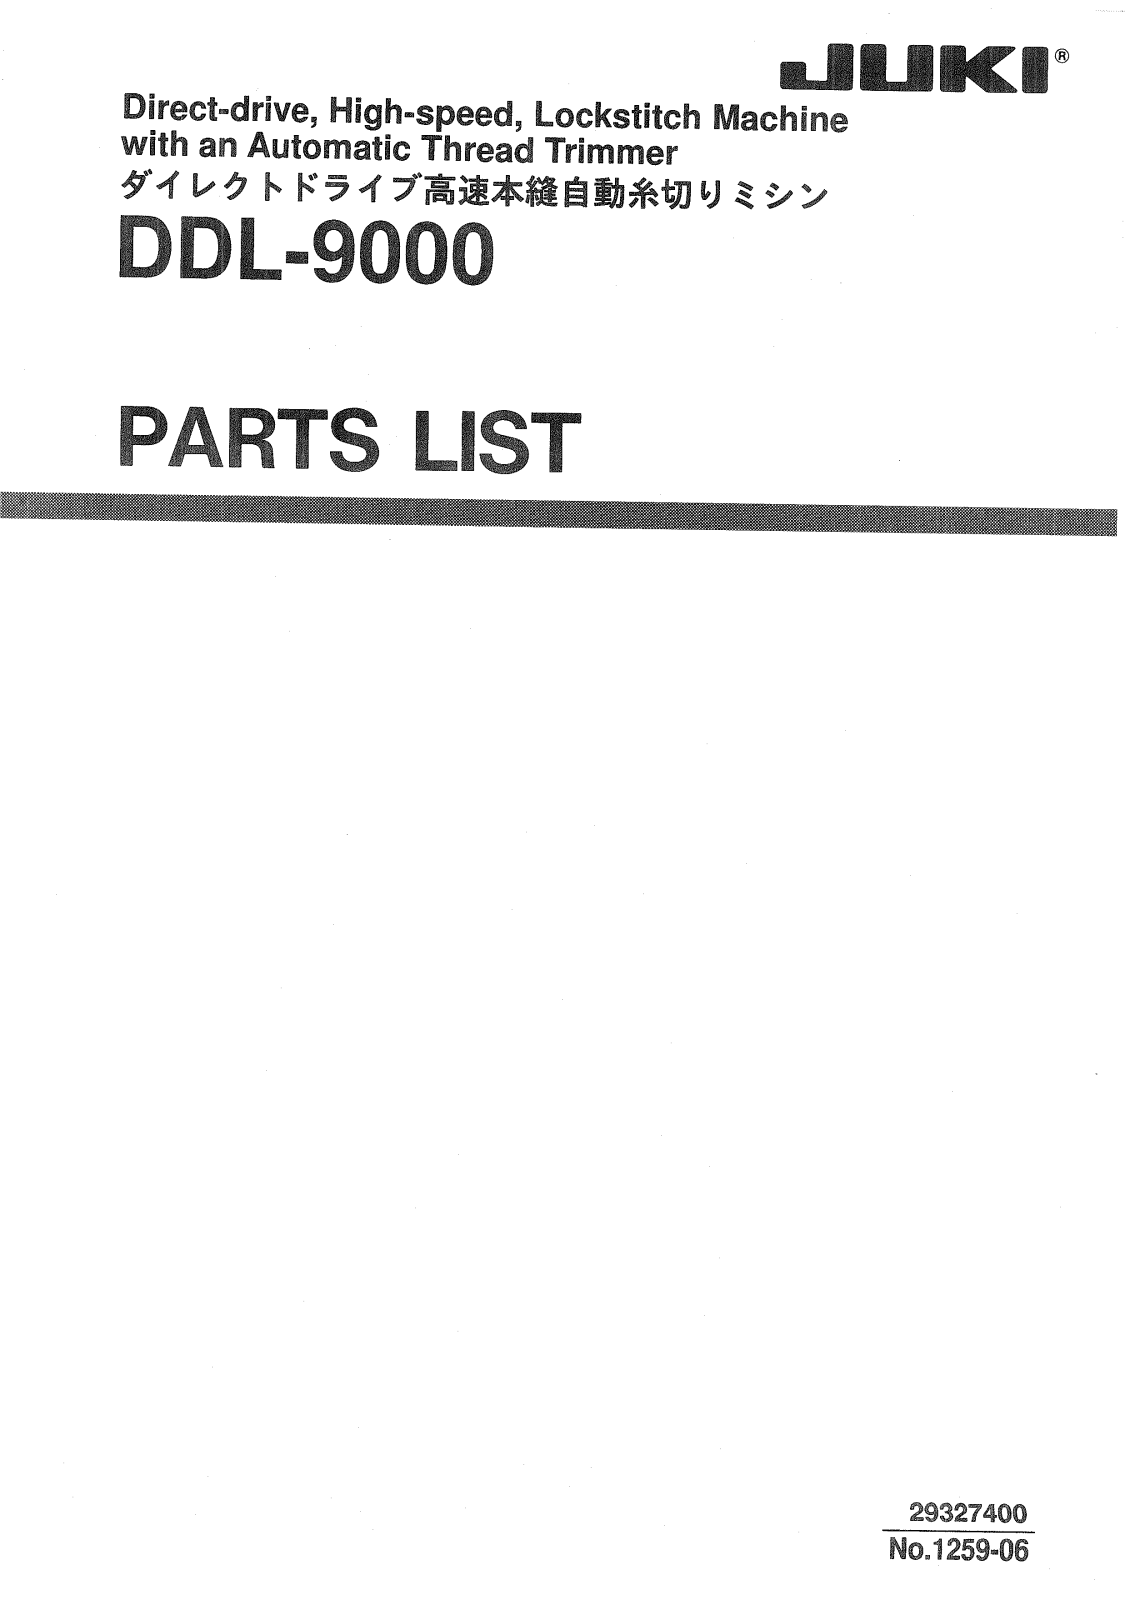 JUKI DDL-9000 Parts List